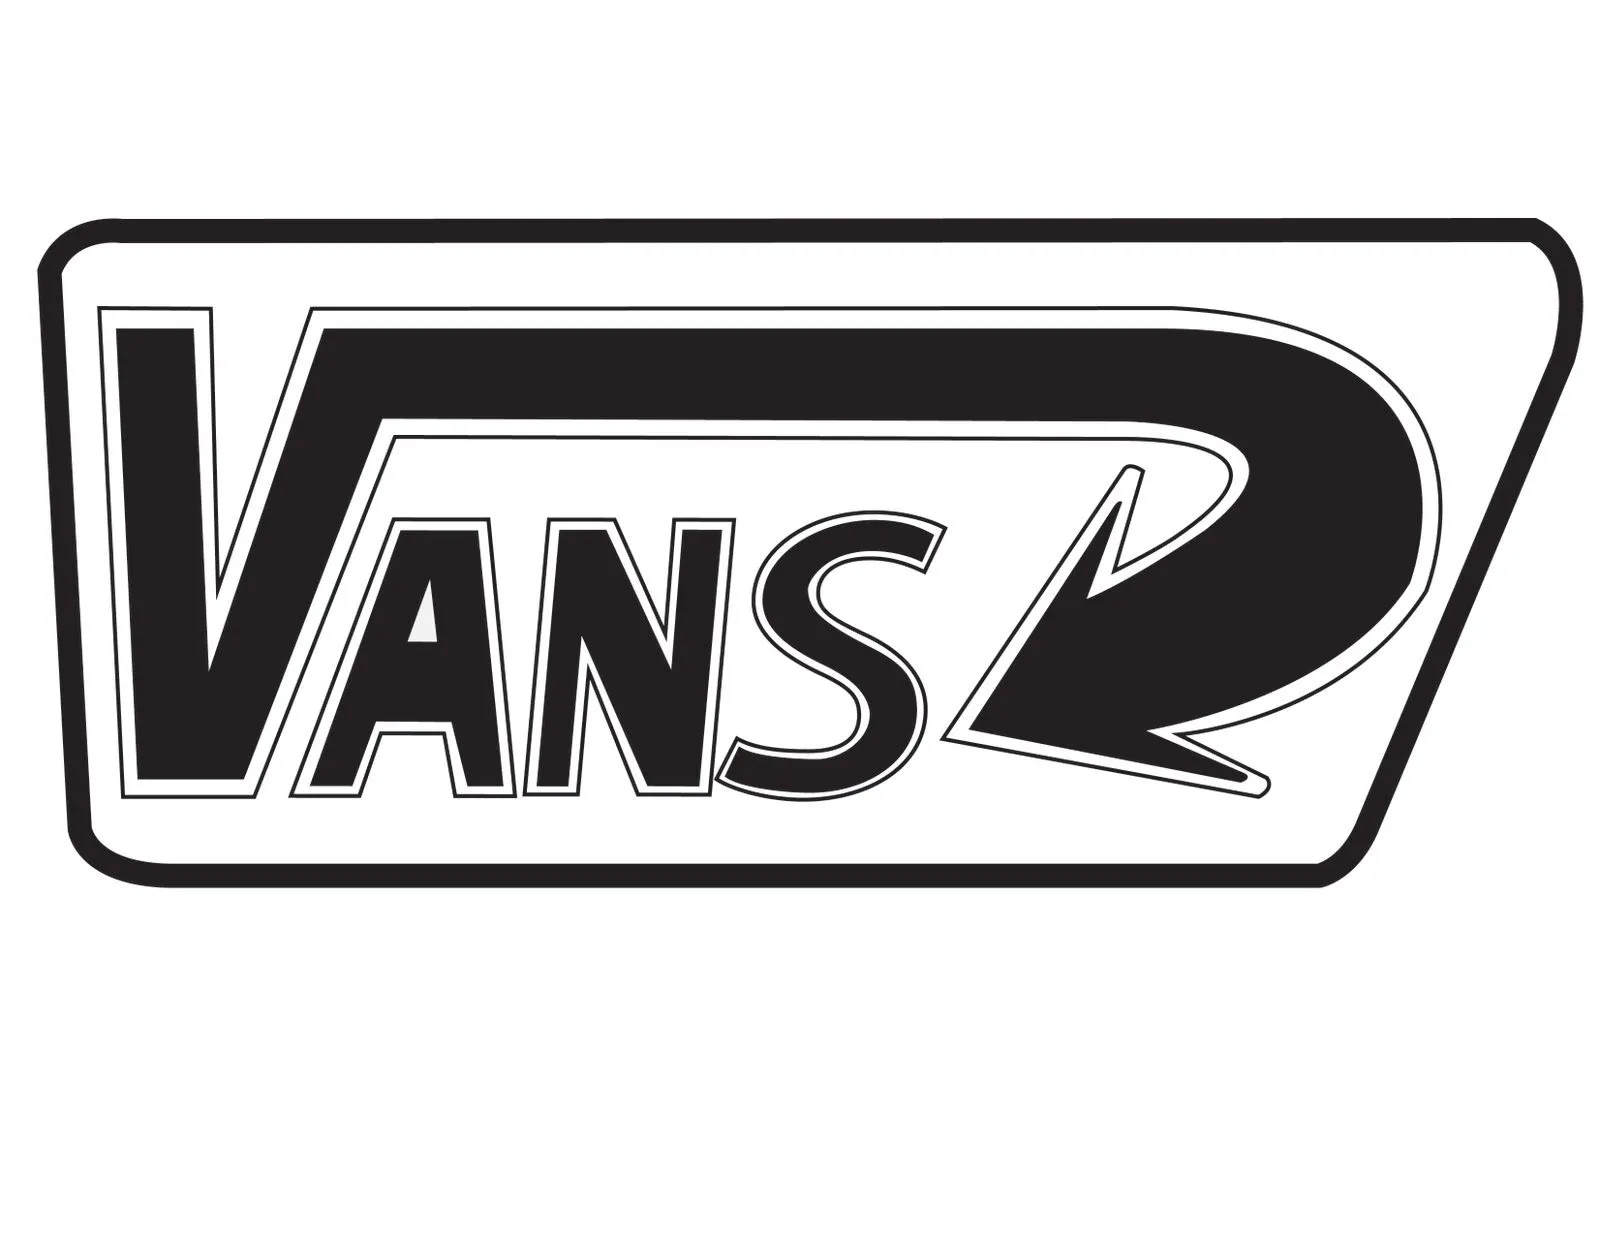 Vans Logo Drawing - Viewing Gallery